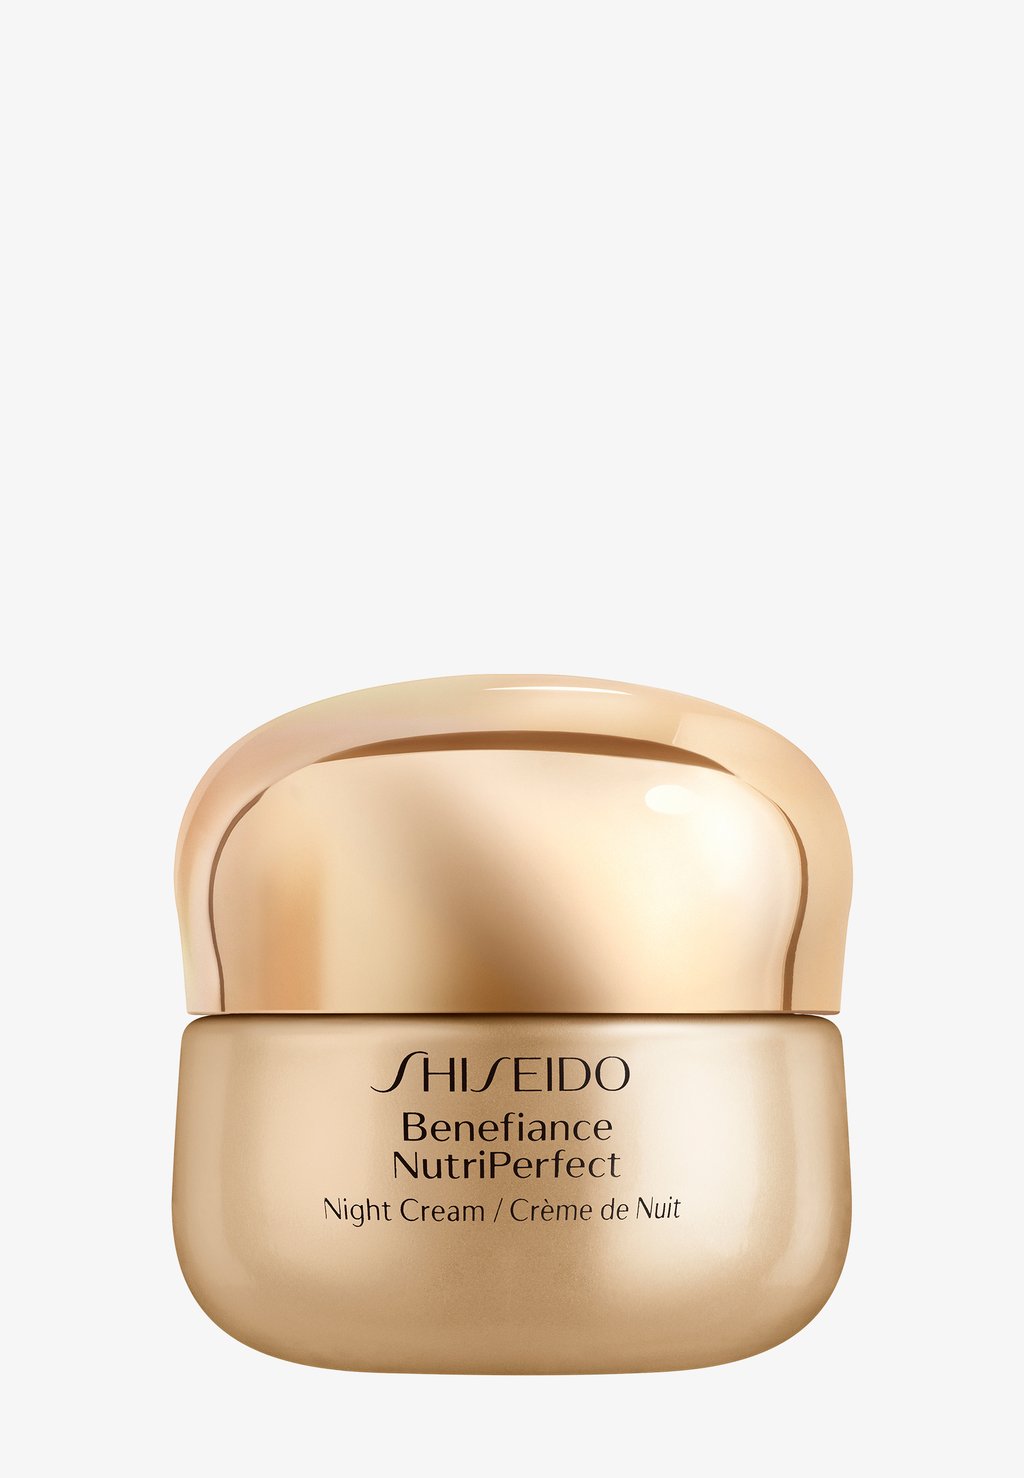 Ночные процедуры Benefiance Nutriperfect Ночной Крем 50 Мл Shiseido ночной крем для лица shiseido benefiance nutriperfect ночной крем